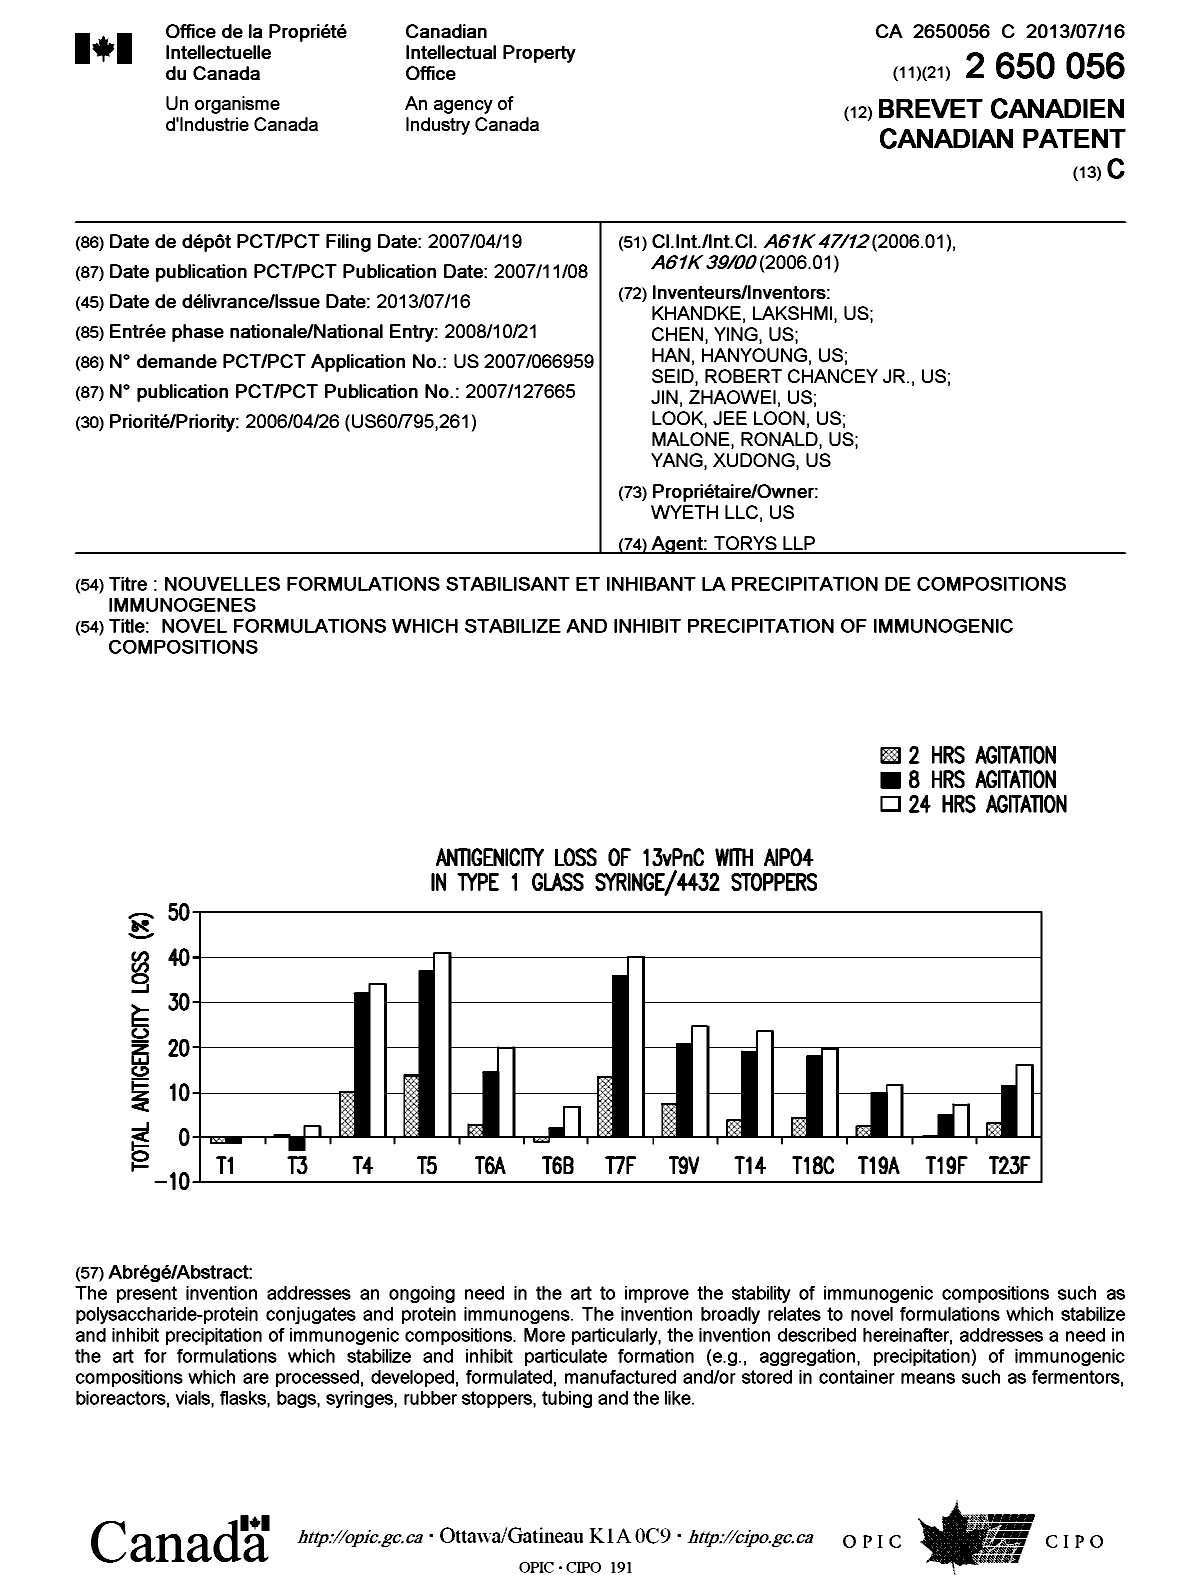 Document de brevet canadien 2650056. Page couverture 20121221. Image 1 de 1